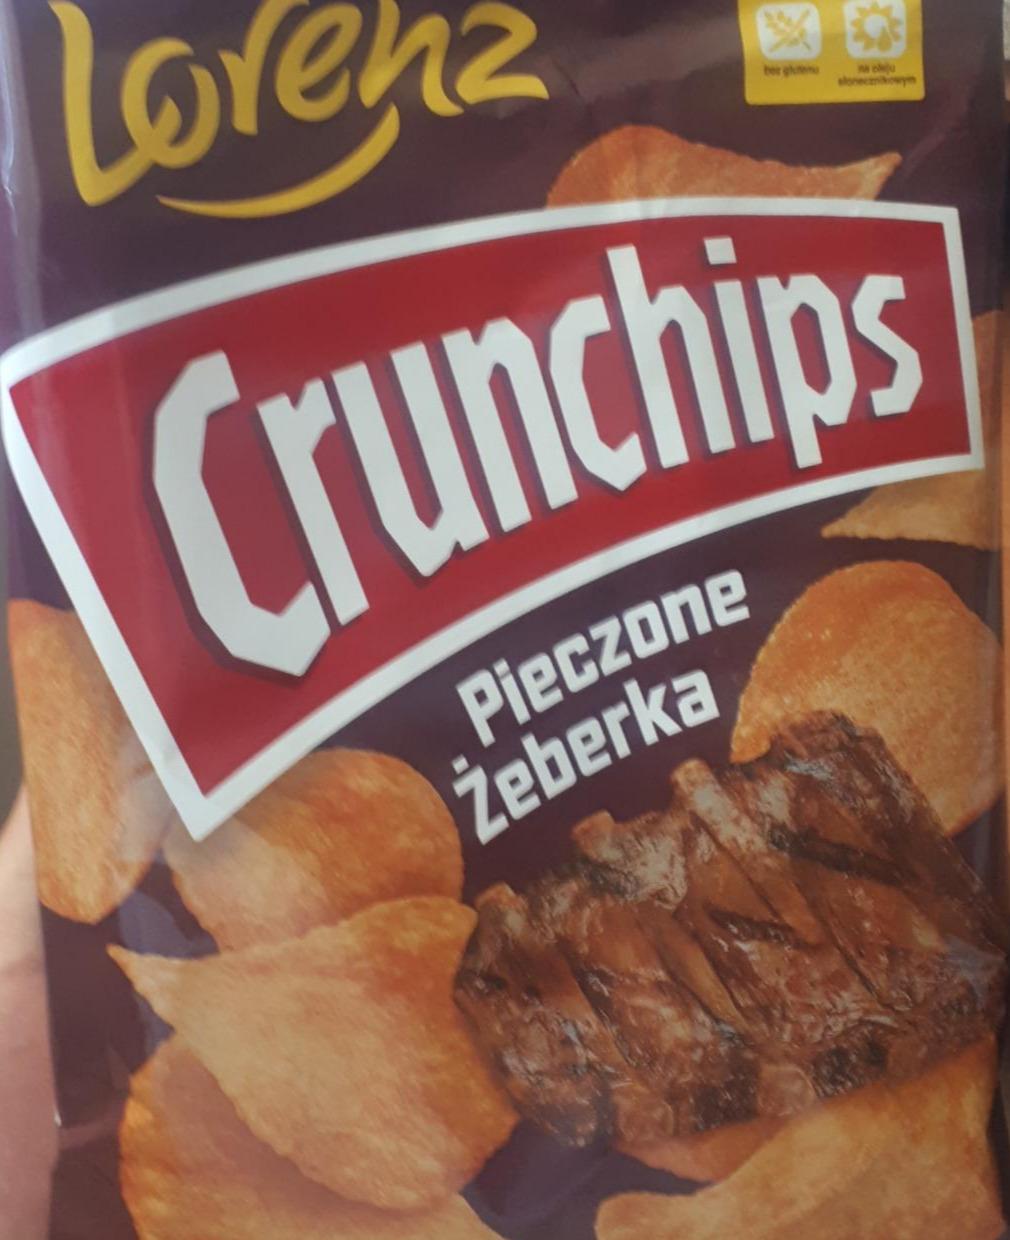 Zdjęcia - Crunchips Chipsy ziemniaczane pieczone żeberka 140 g